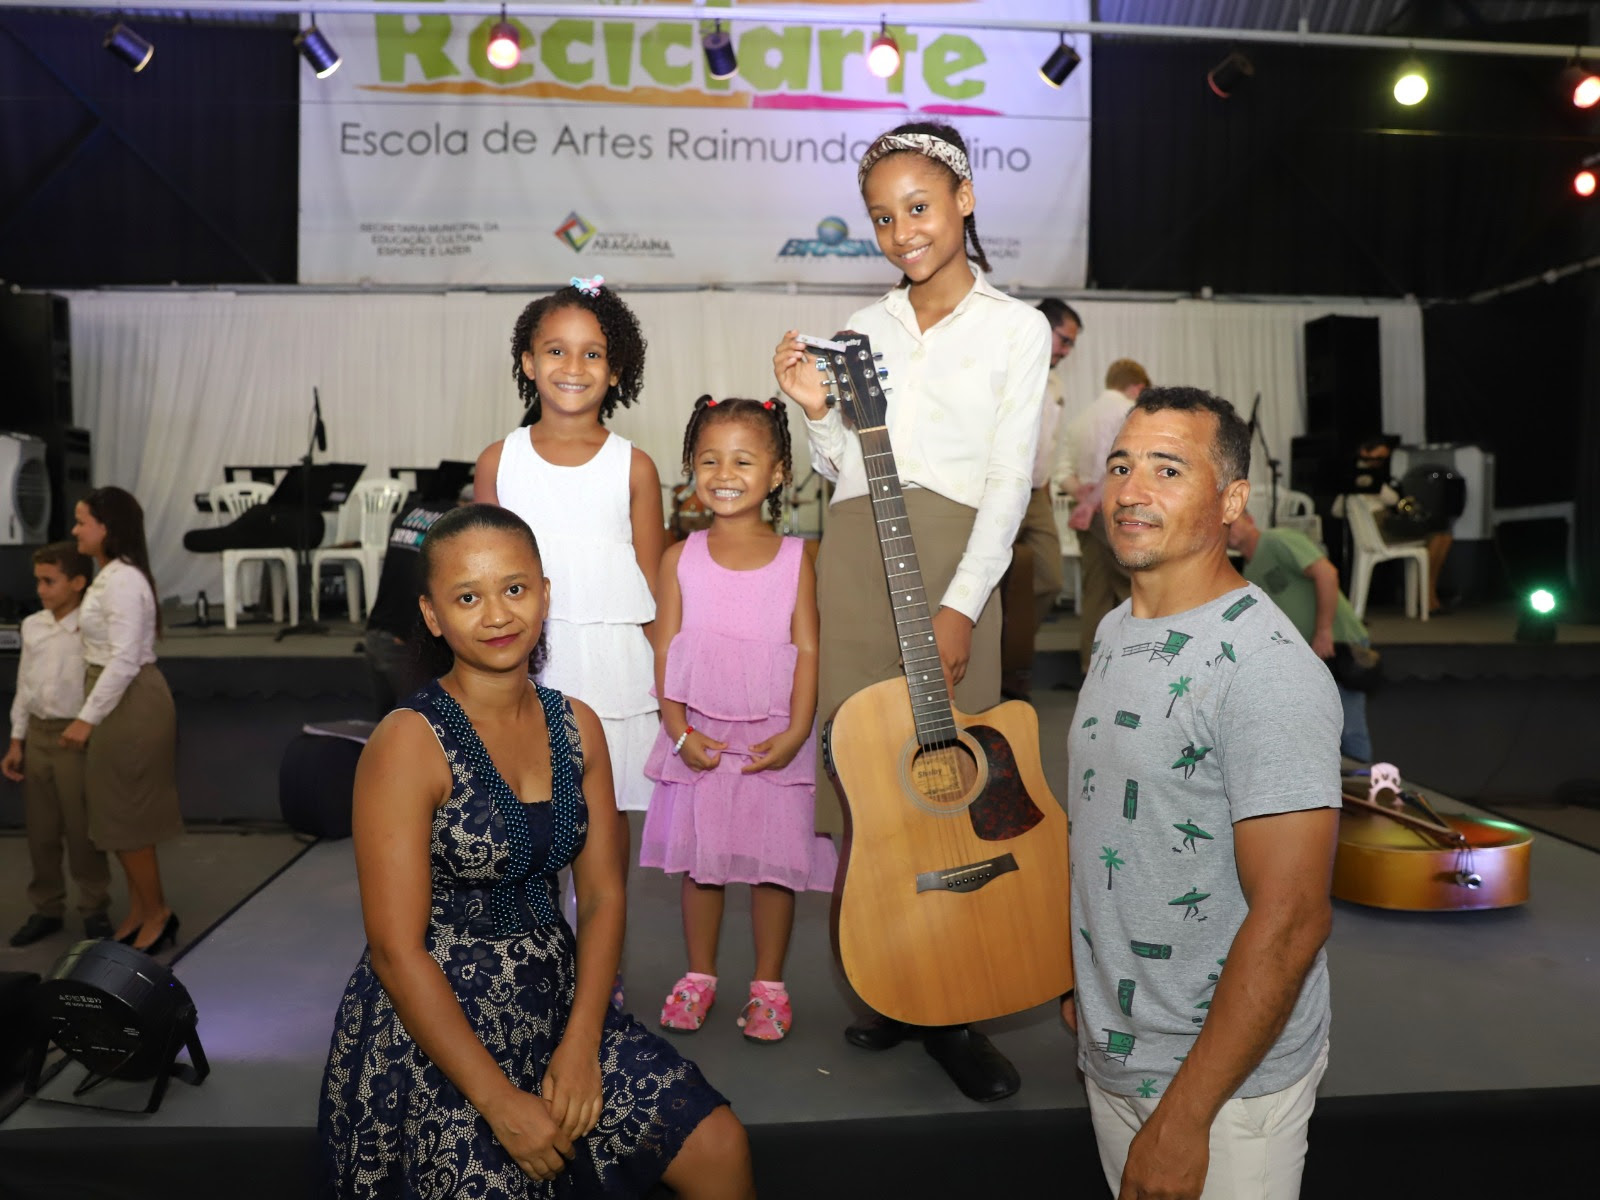 “A Júlia gosta muito de cantar e tocar violão e, aqui na Reciclarte encontramos essa oportunidade. Como pai posso dizer que é transformador tudo que eles aprendem aqui”, disse Júnior Batista dos Anjos, ao lado das filhas e esposa.